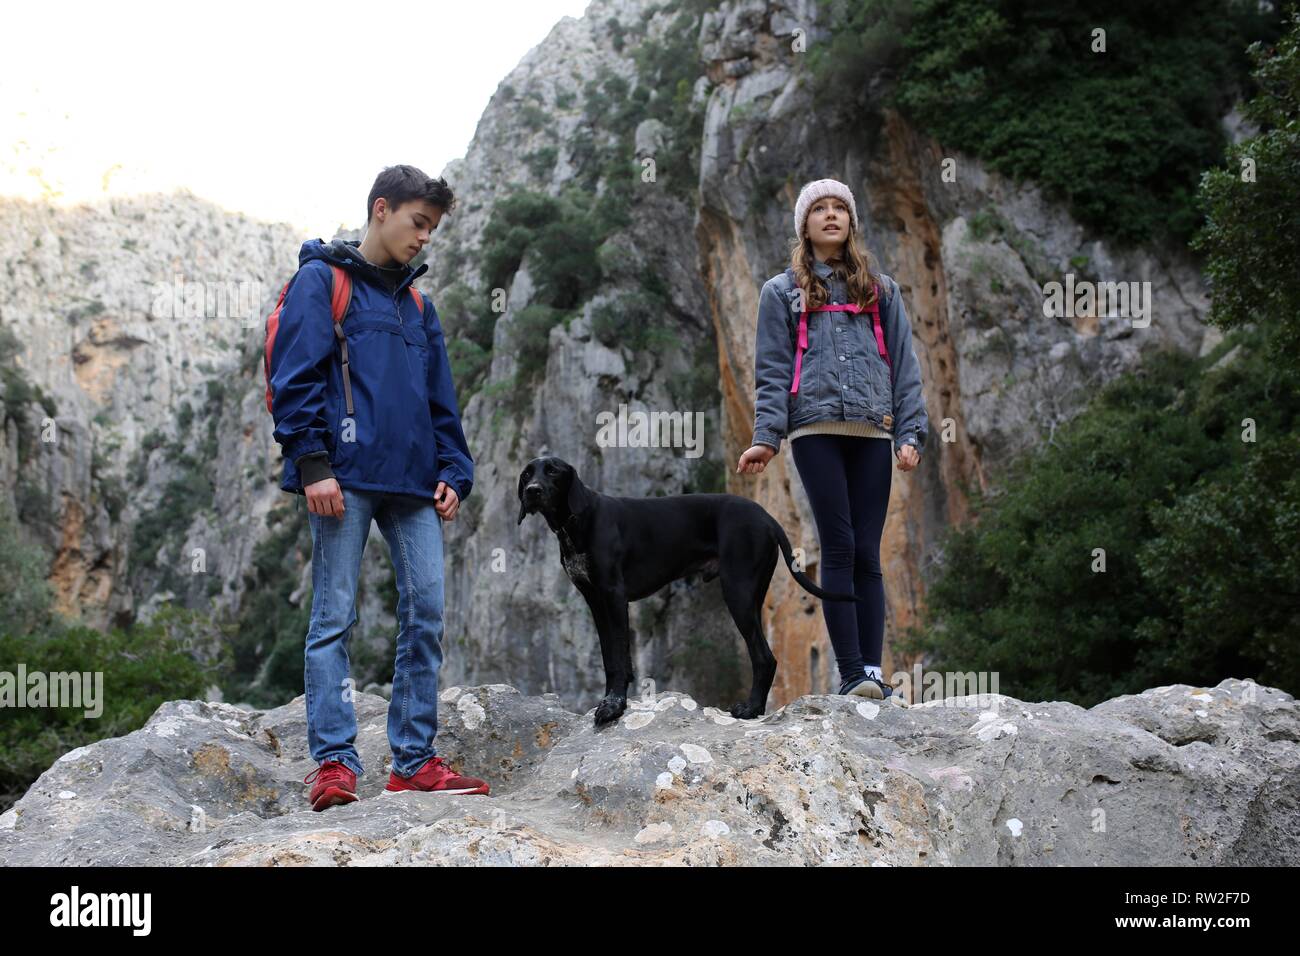 Kinder Wandern mit Hund in der Berglandschaft, Abenteuer im Freien Stockfoto